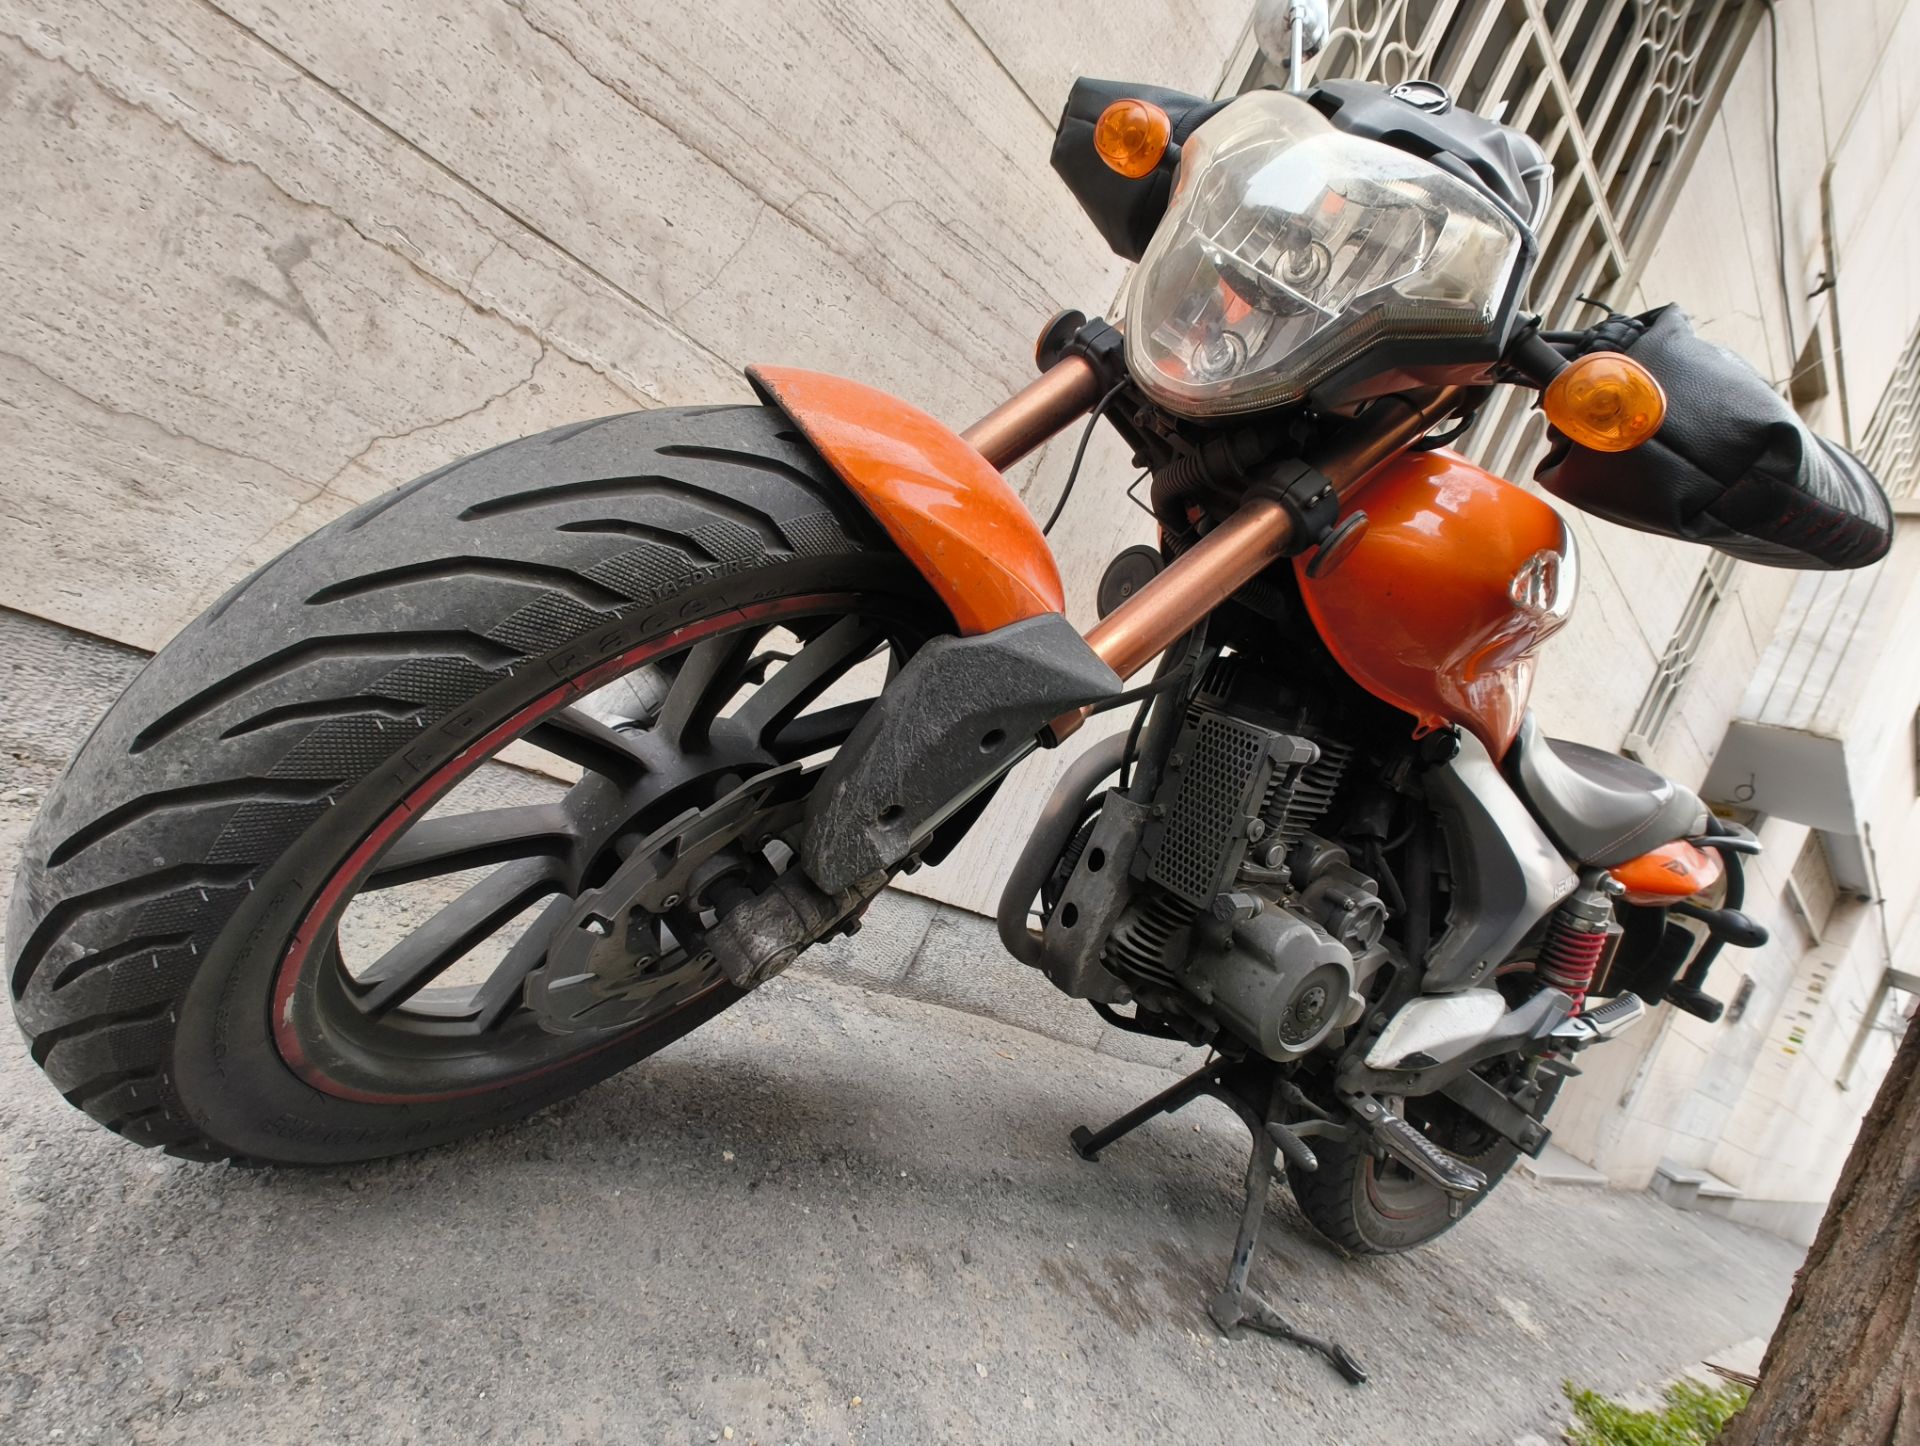 نمونه عکس ناتینگ فون 2a از یک موتورسیکلت نارنجی در حالت کلوزآپ